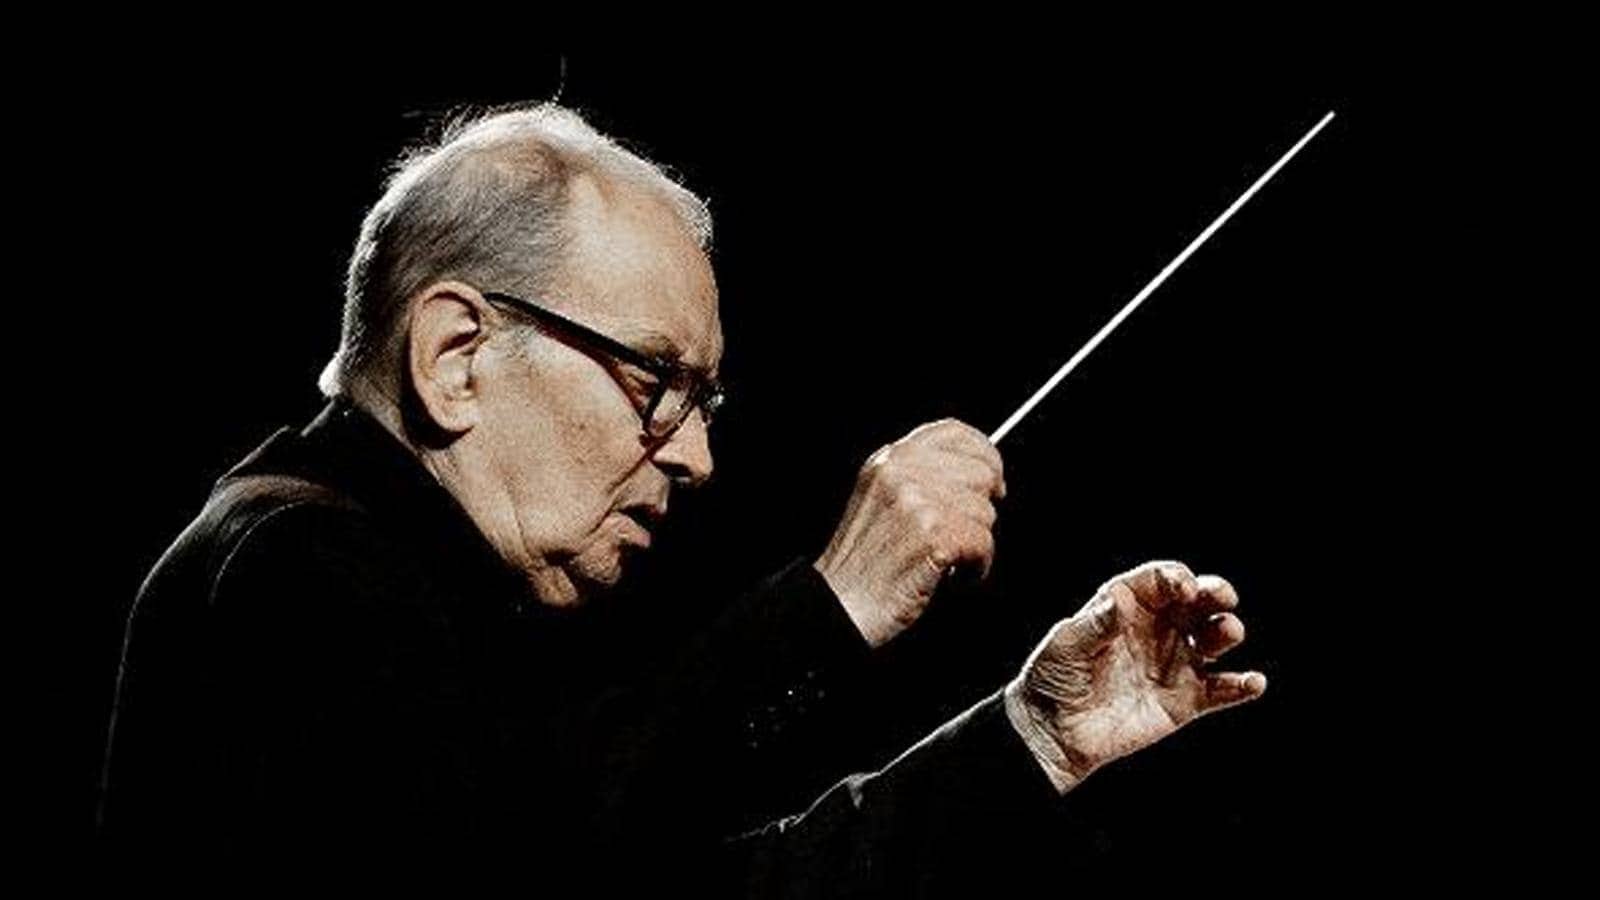 Primo piano di profilo del Maestro Ennio Morricone, con giacca nera, fotografato su sfondo nero mentre dirige. La luce illumina il suo volto concentrato e le sue mani, bacchetta nella destra, mentre guidano un'orchestra.